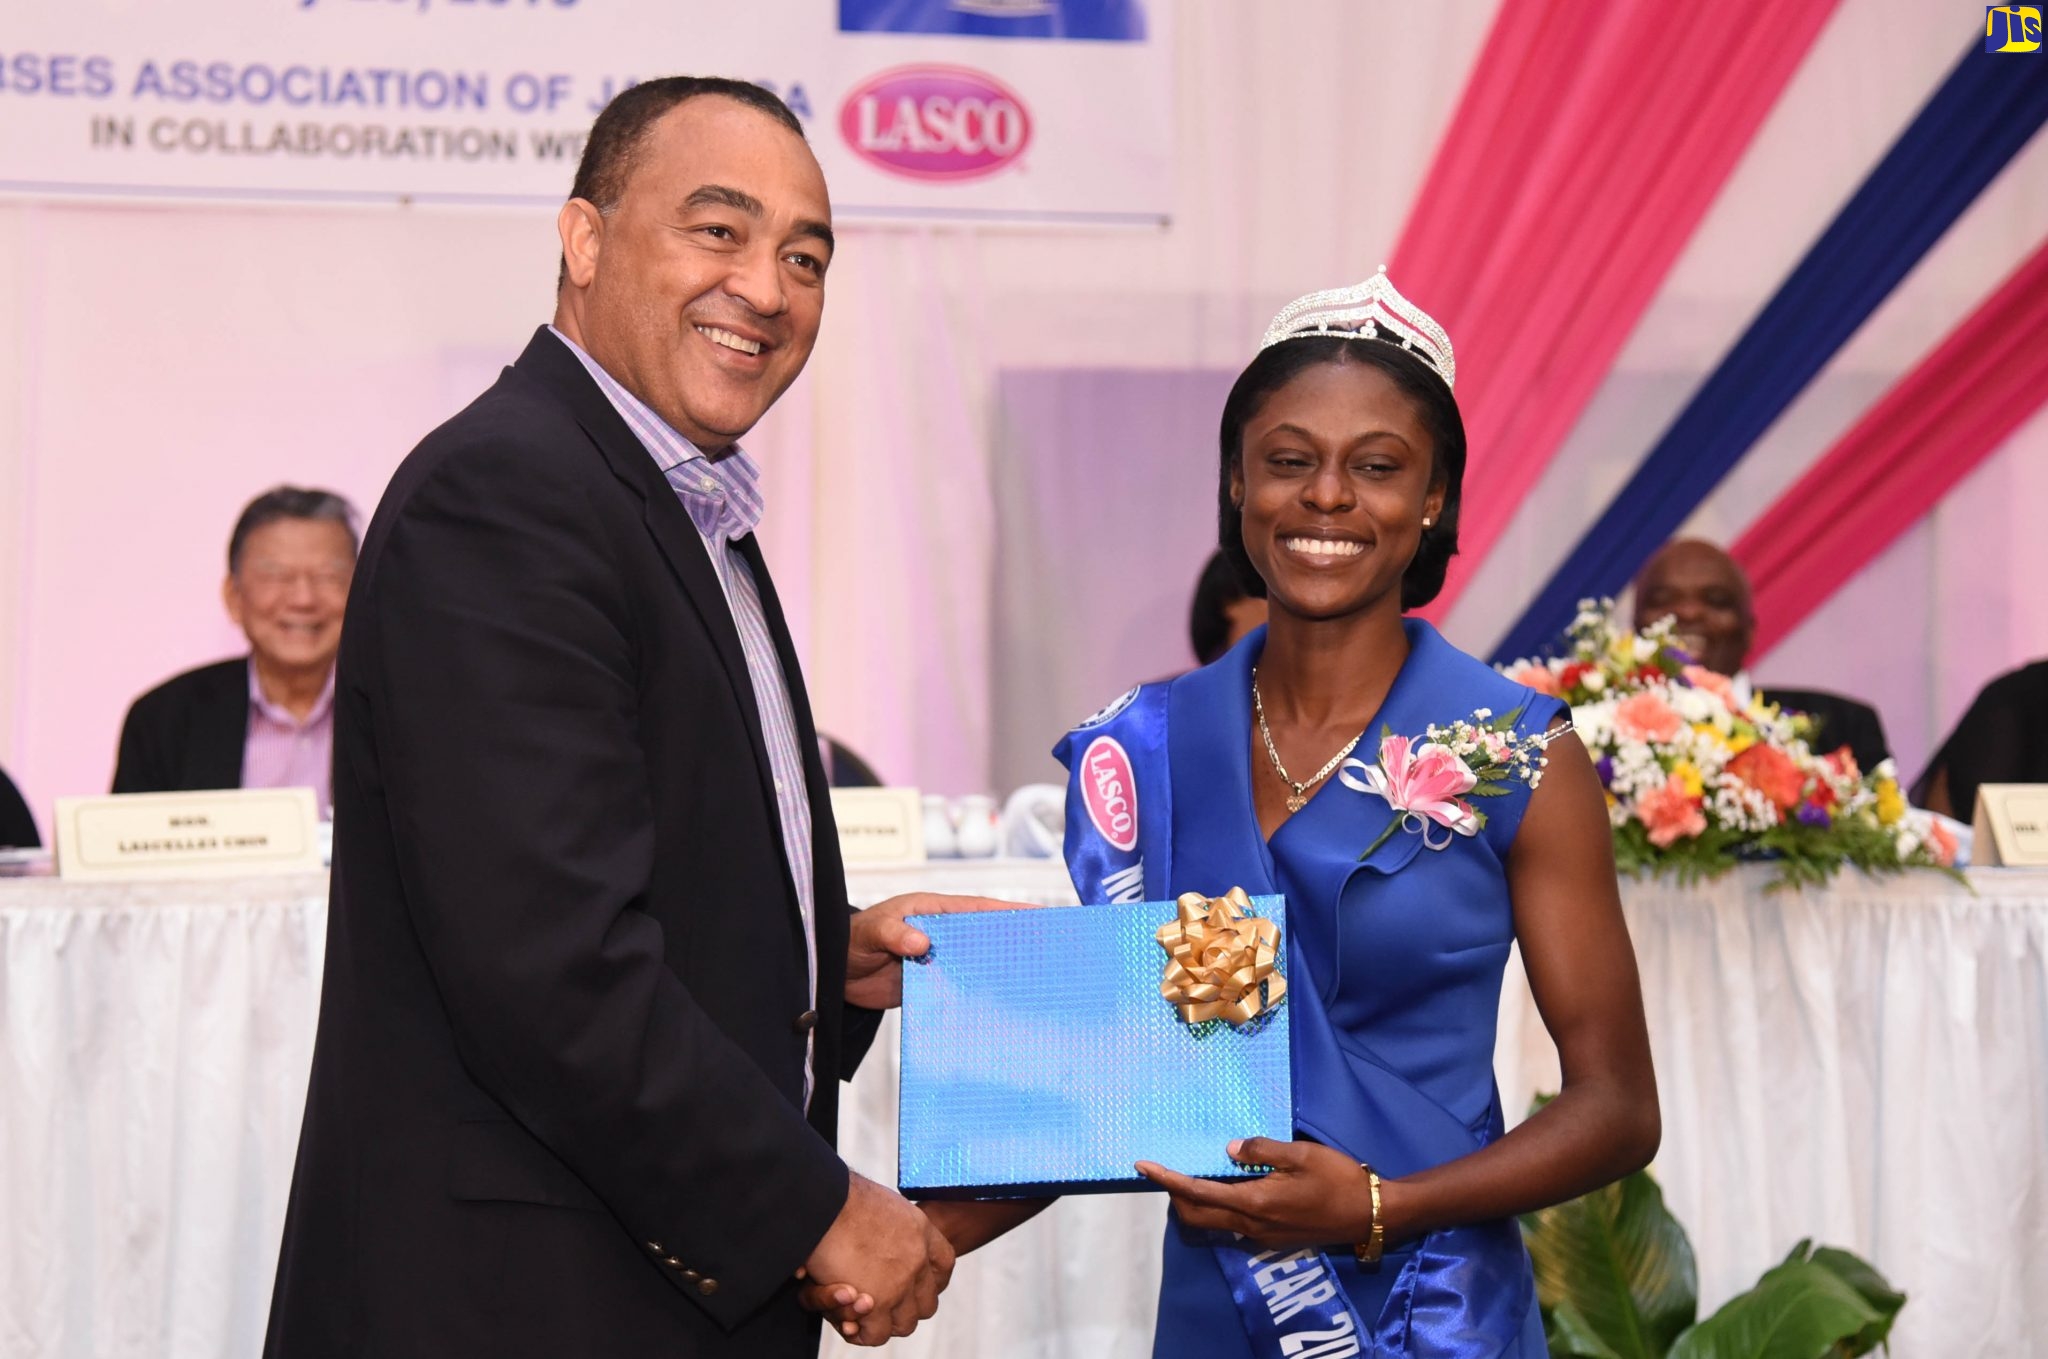 Photos Nurses Association Of Jamaica And Lasco Awards Ceremony Jamaica Information Service